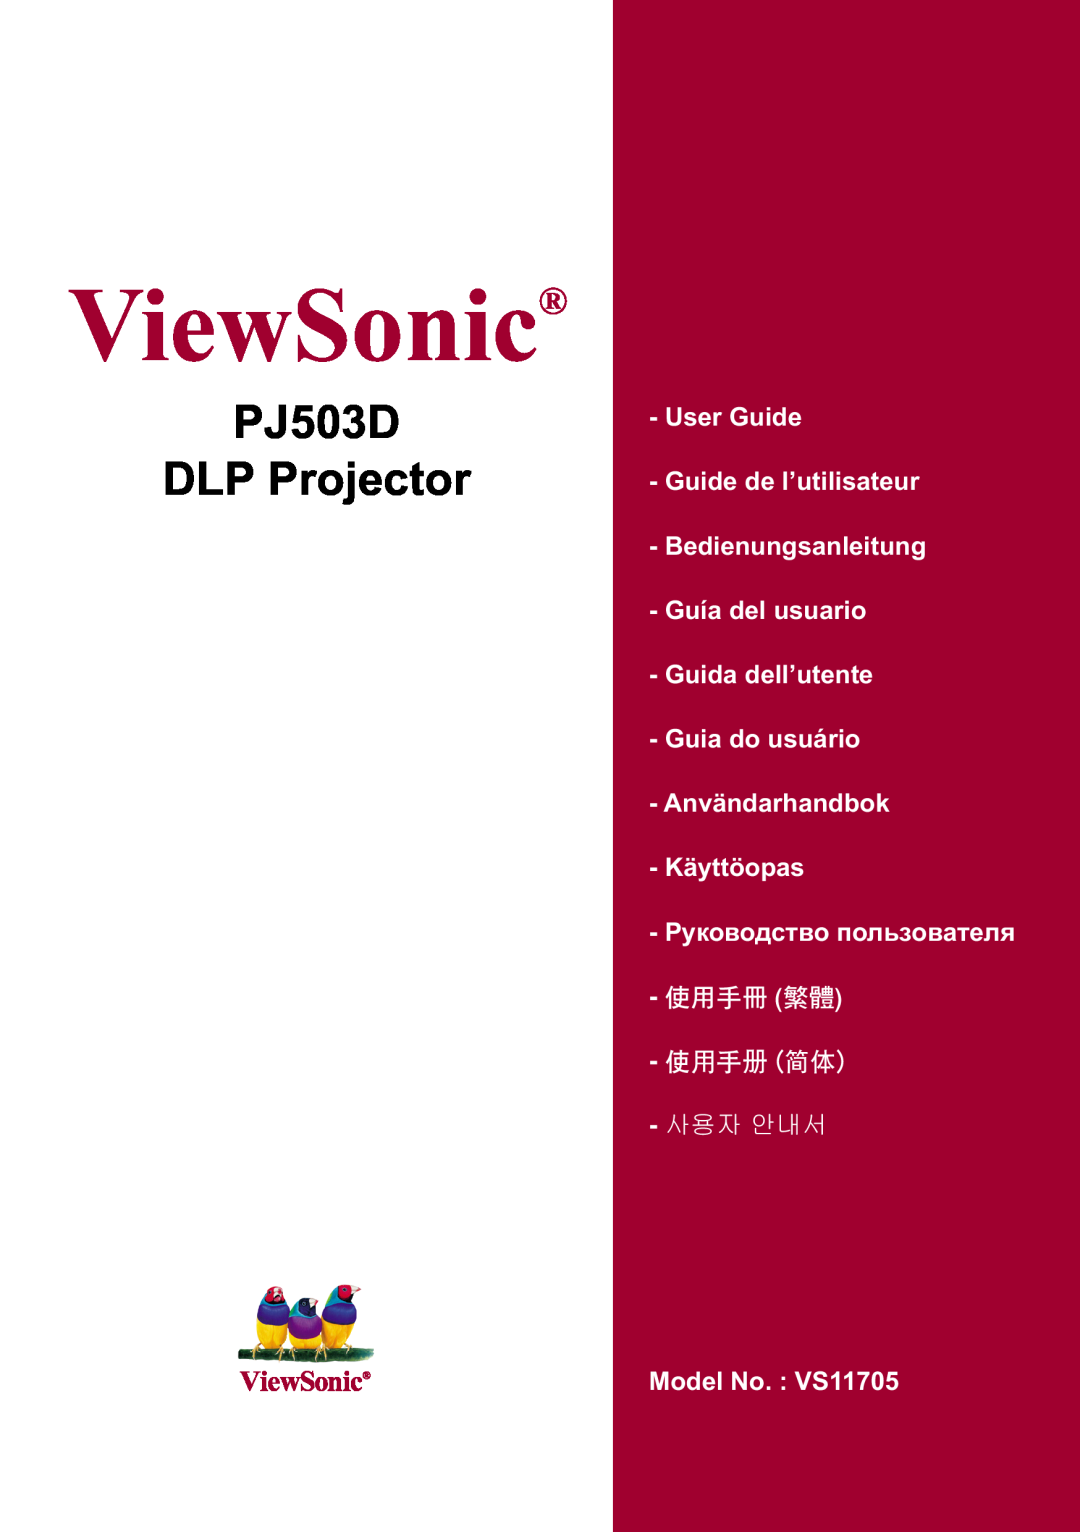 ViewSonic 40PJ503D manual 3- 33URMHFWRU, 9LHZ6RQLFŠ, 8VHU*XLGH *XLGHGHO¶XWLOLVDWHXU %HGLHQXQJVDQOHLWXQJ 